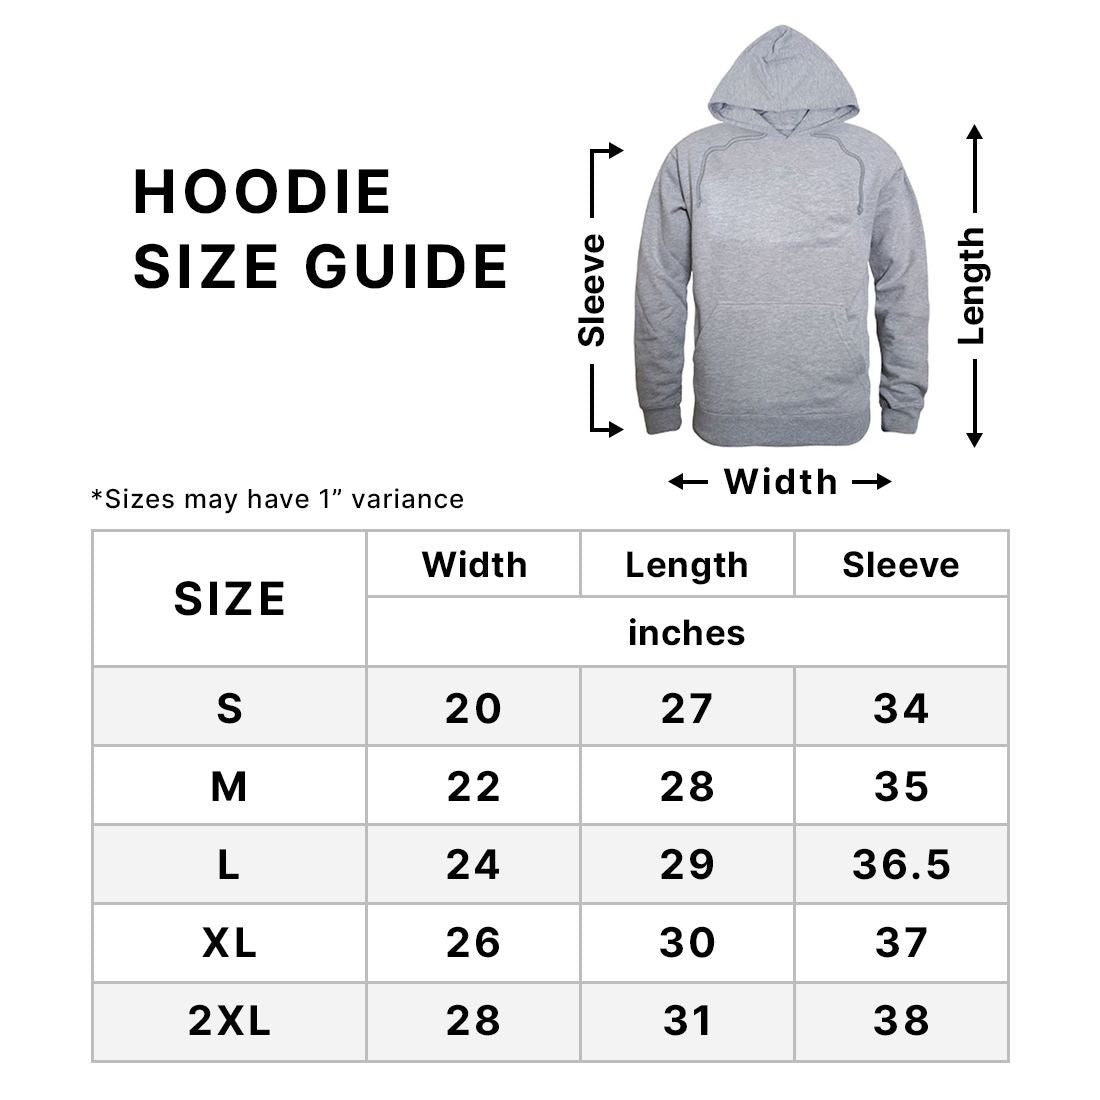 Hooded Sweatshirts Size Chart